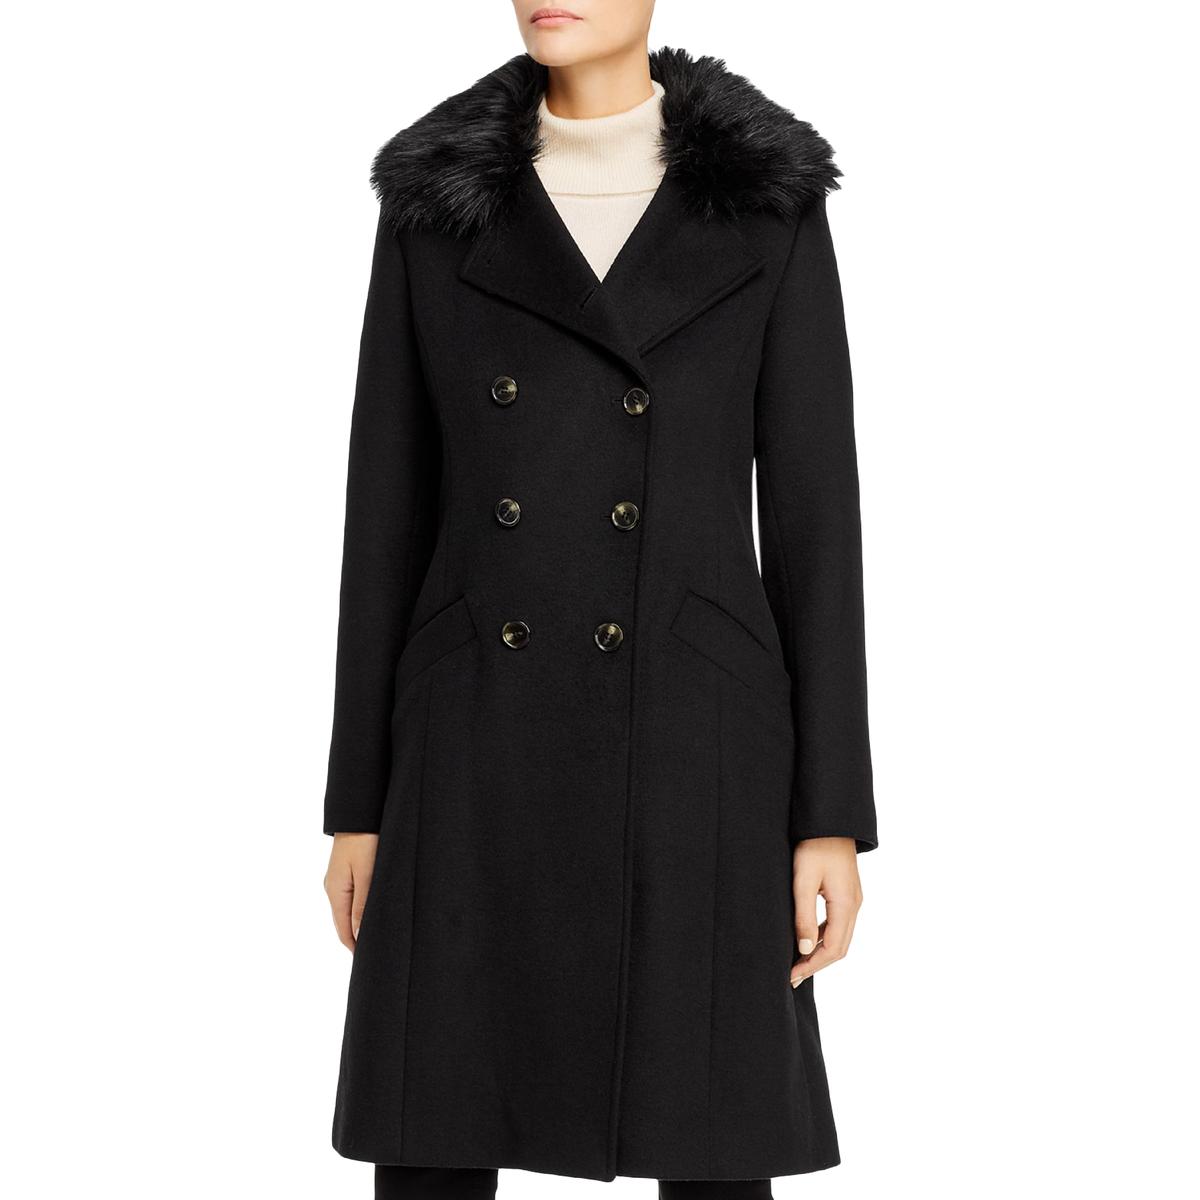 Tahari Women's Coats & Jackets - Sears